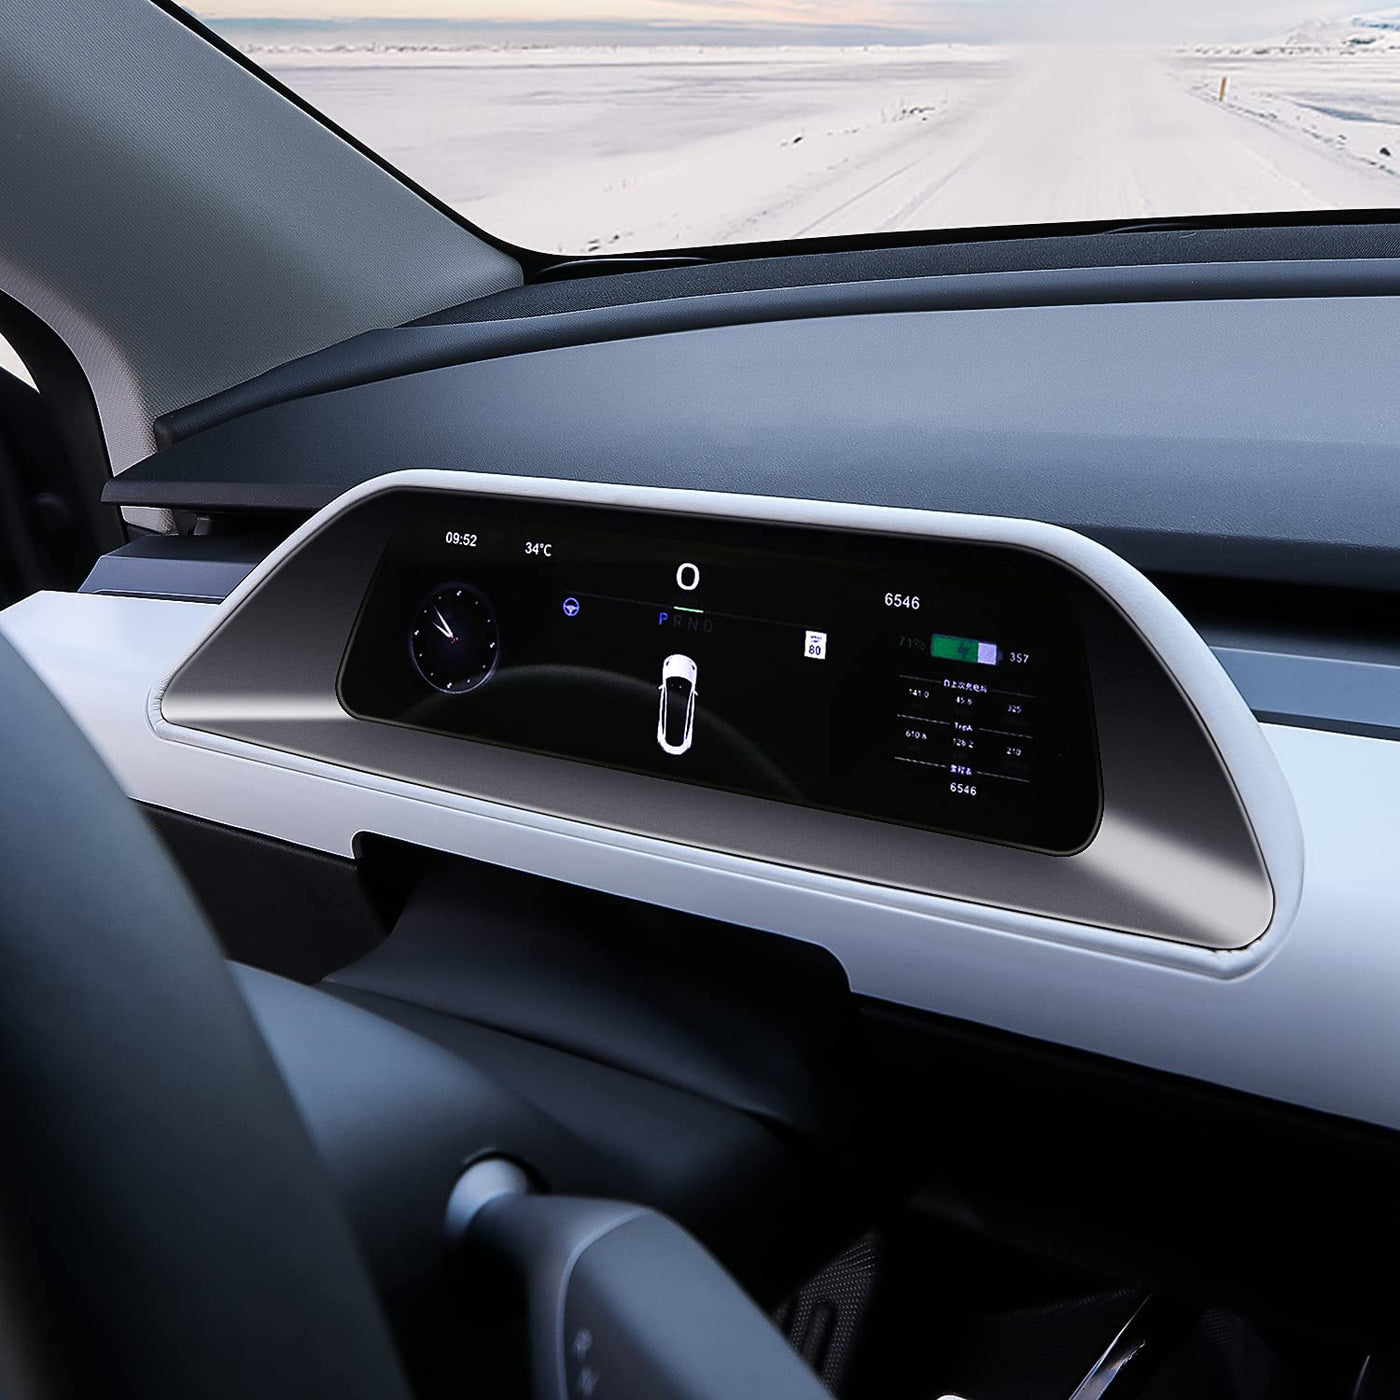 Full Length Dashboard Instrument Cluster Display For Tesla Model Y 2020-2023 - PimpMyEV